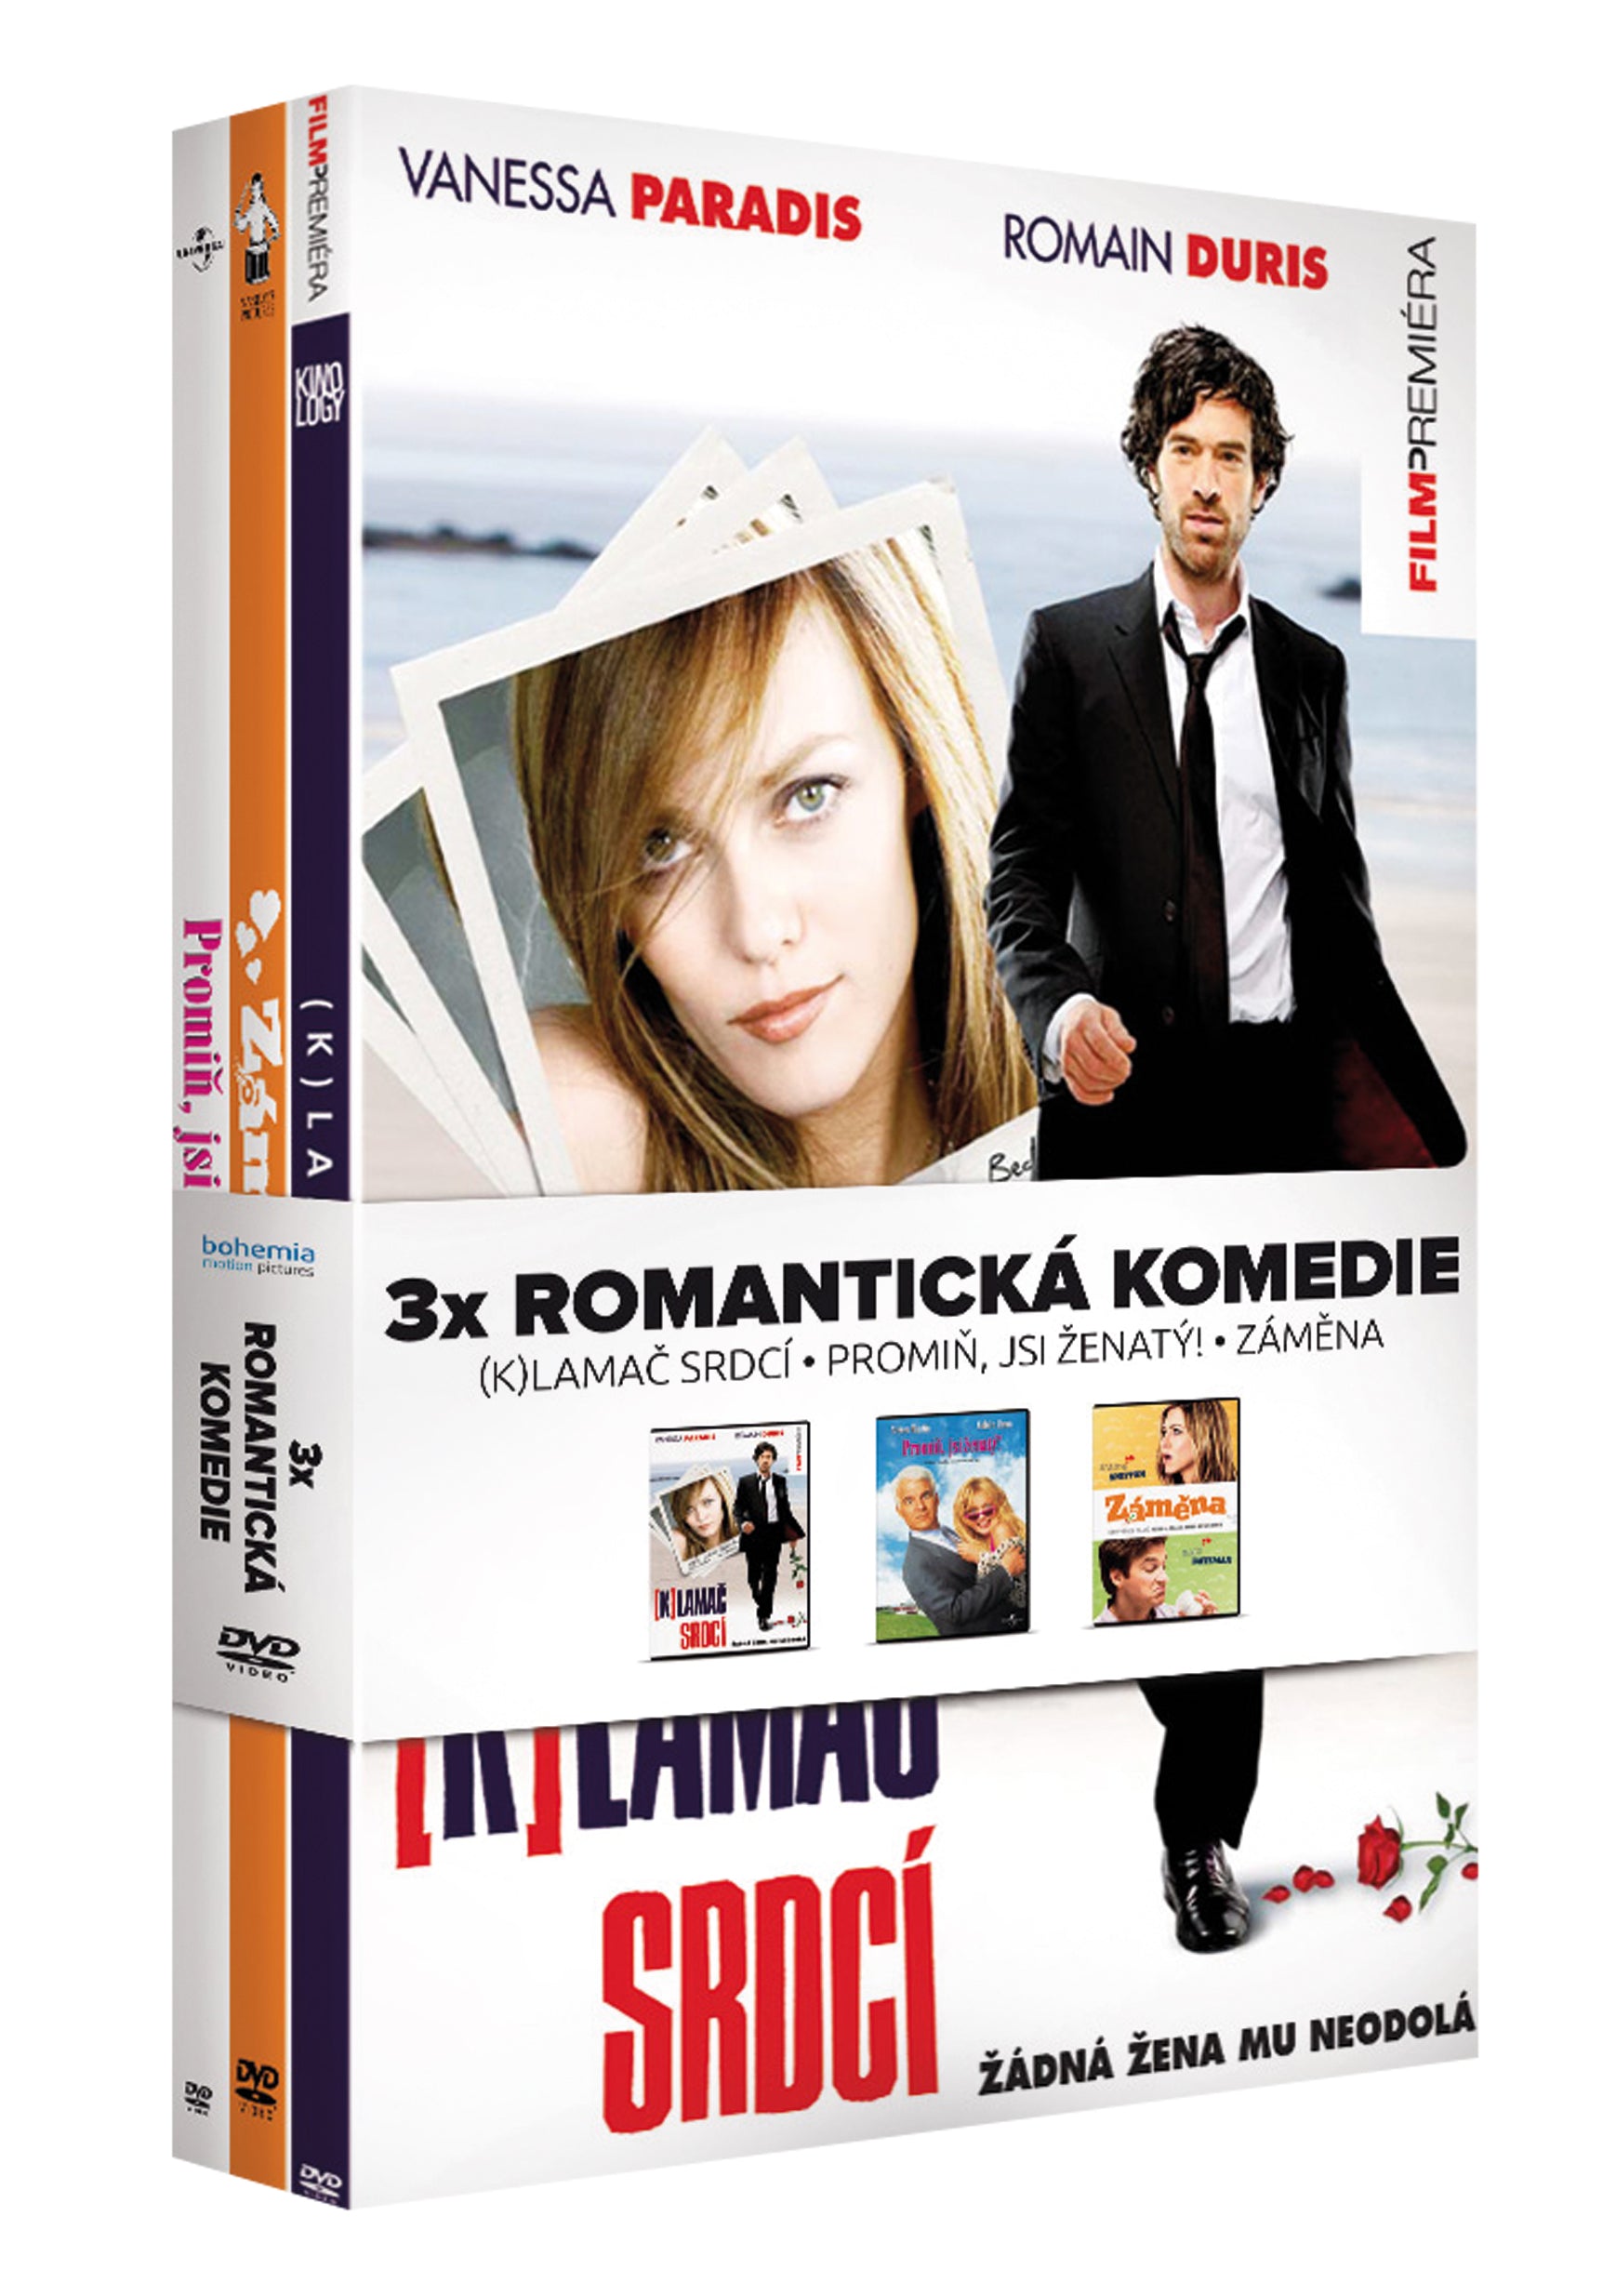 Romanticke komedie kolekce 3DVD (Klamac srdci, Promin, jsi zenaty, Zamena) / Romanticke komedie kolekce